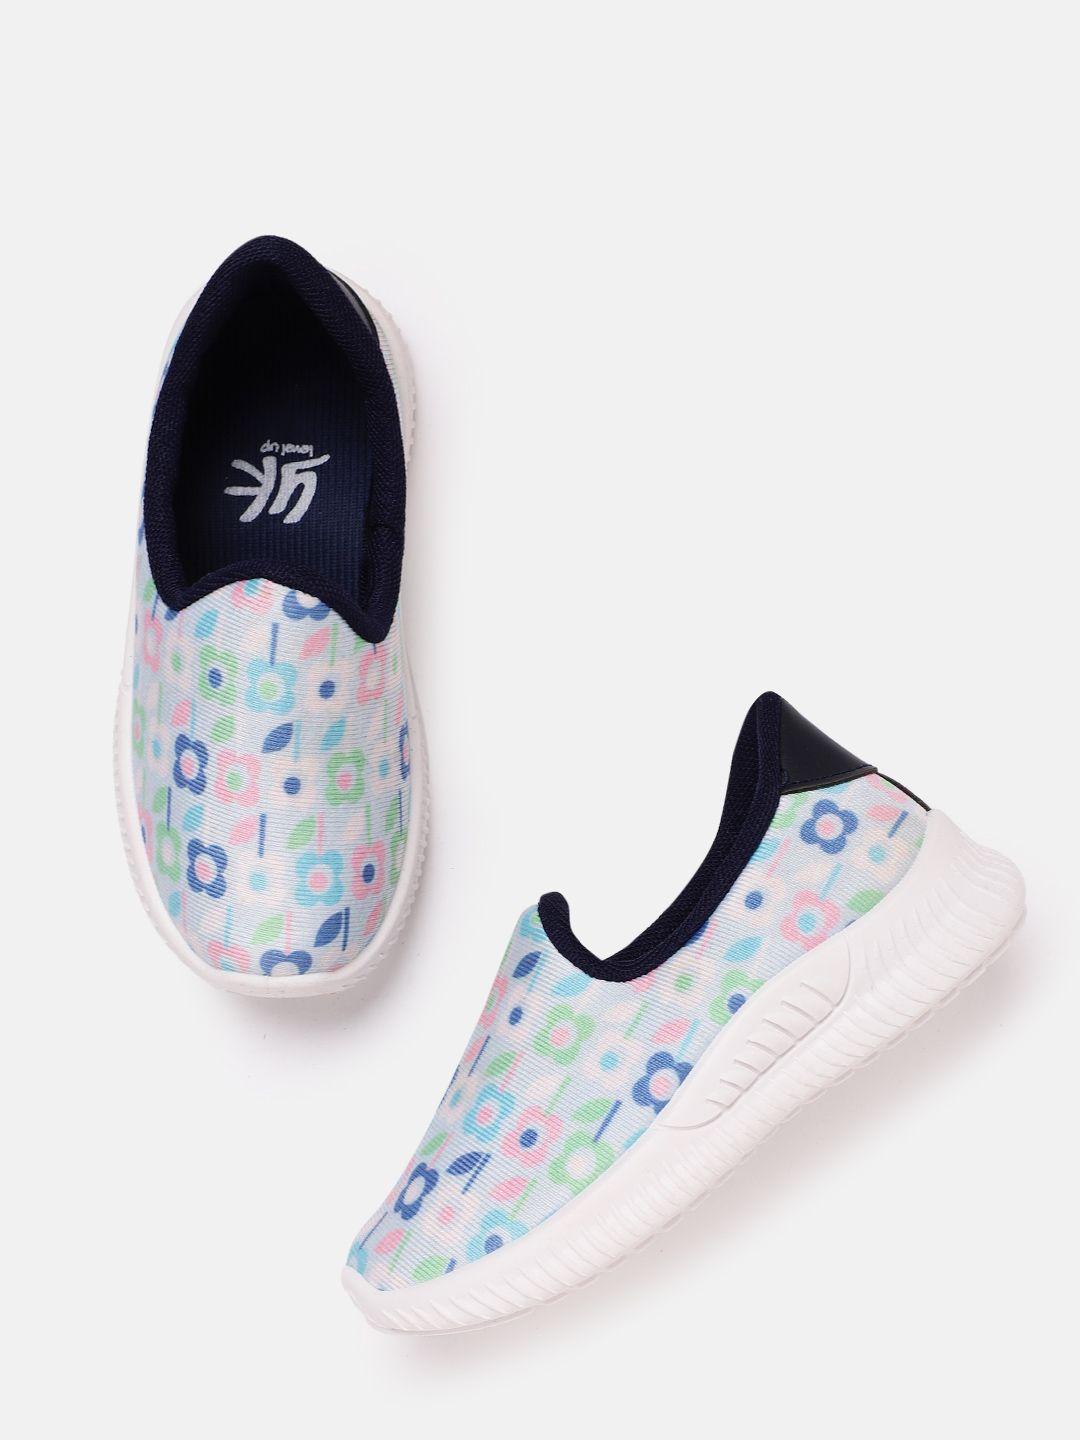 yk girls blue & green floral printed slip-on sneakers